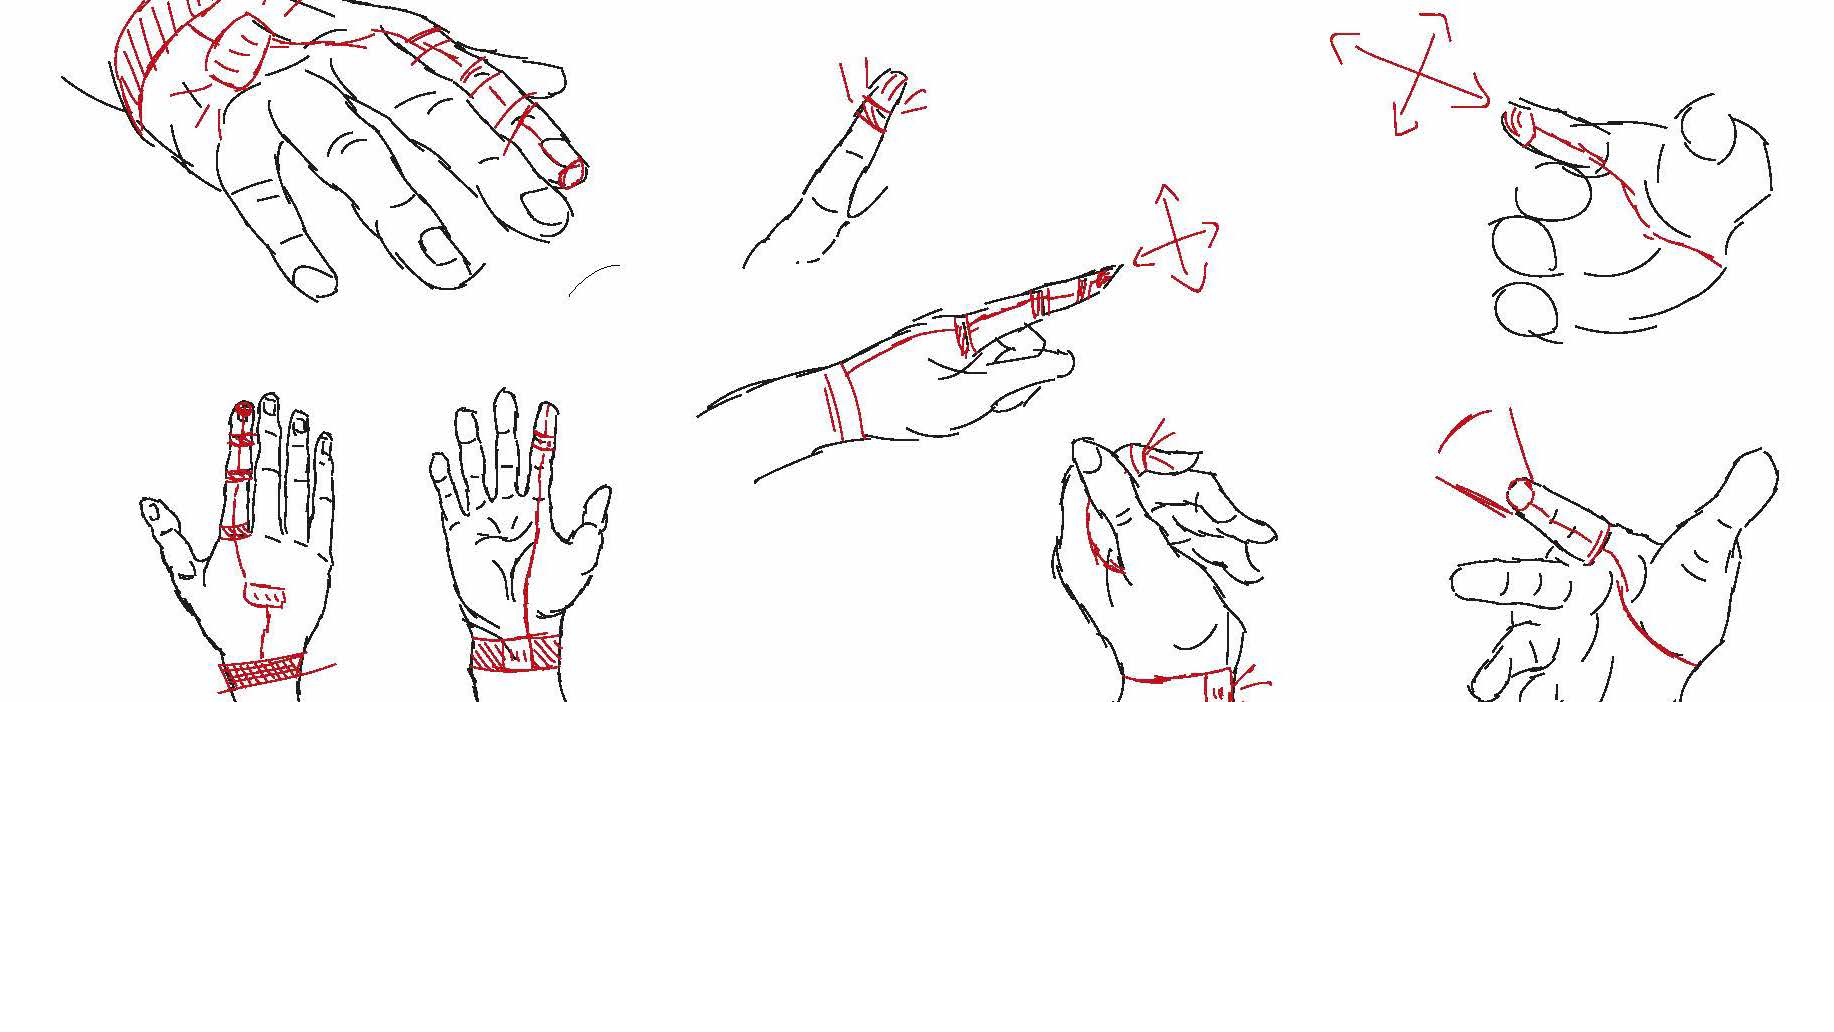 Giovanni Massara “Eyes in hand” – studio del dispositivo in relazione alle articolazioni della mano